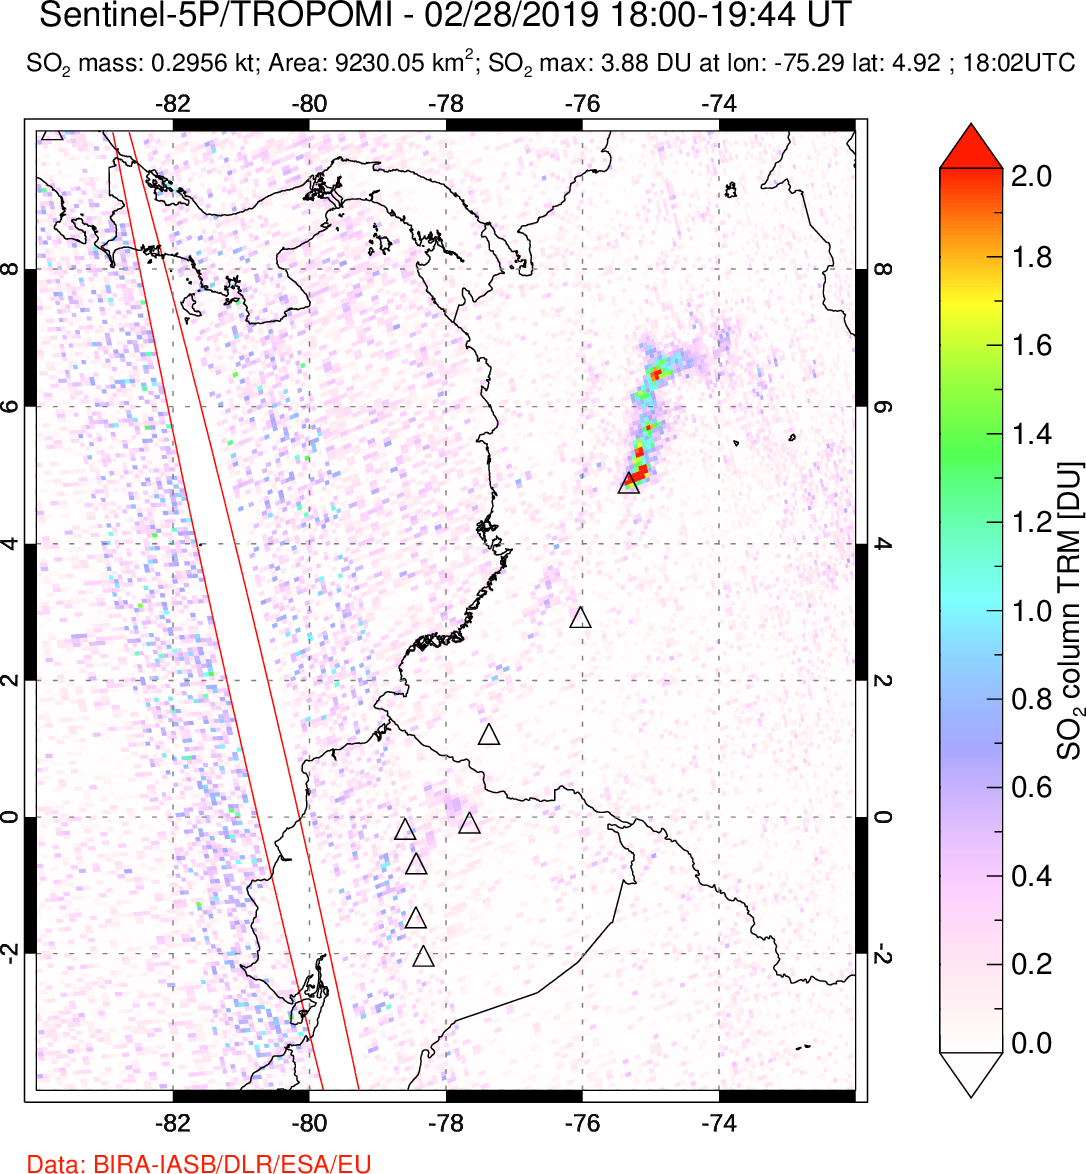 A sulfur dioxide image over Ecuador on Feb 28, 2019.